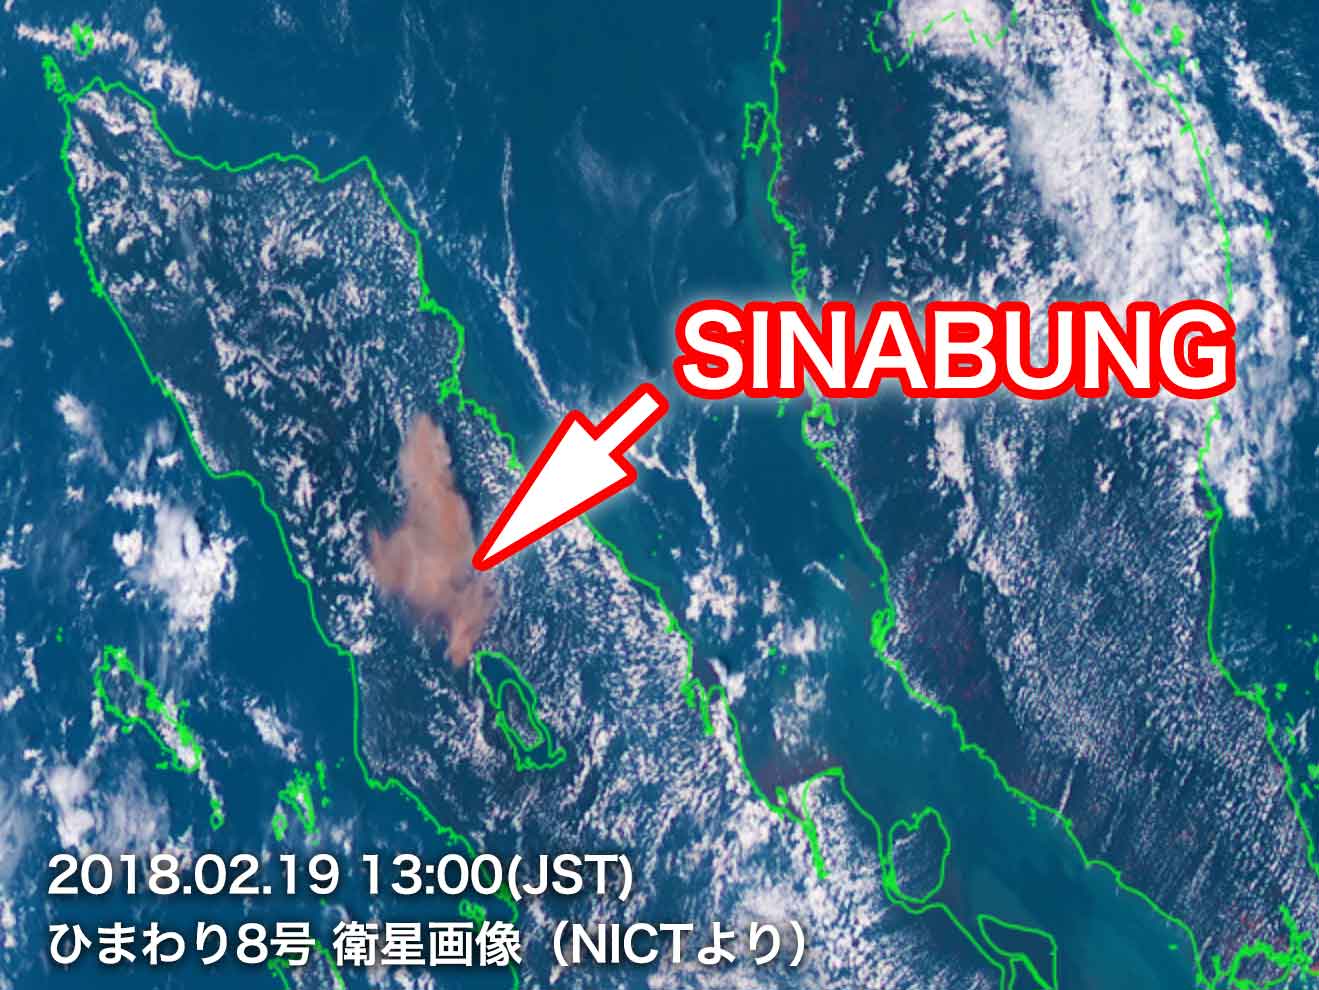 インドネシア シナブン山が噴火 噴煙火口上1万メートル超 ウェザーニュース